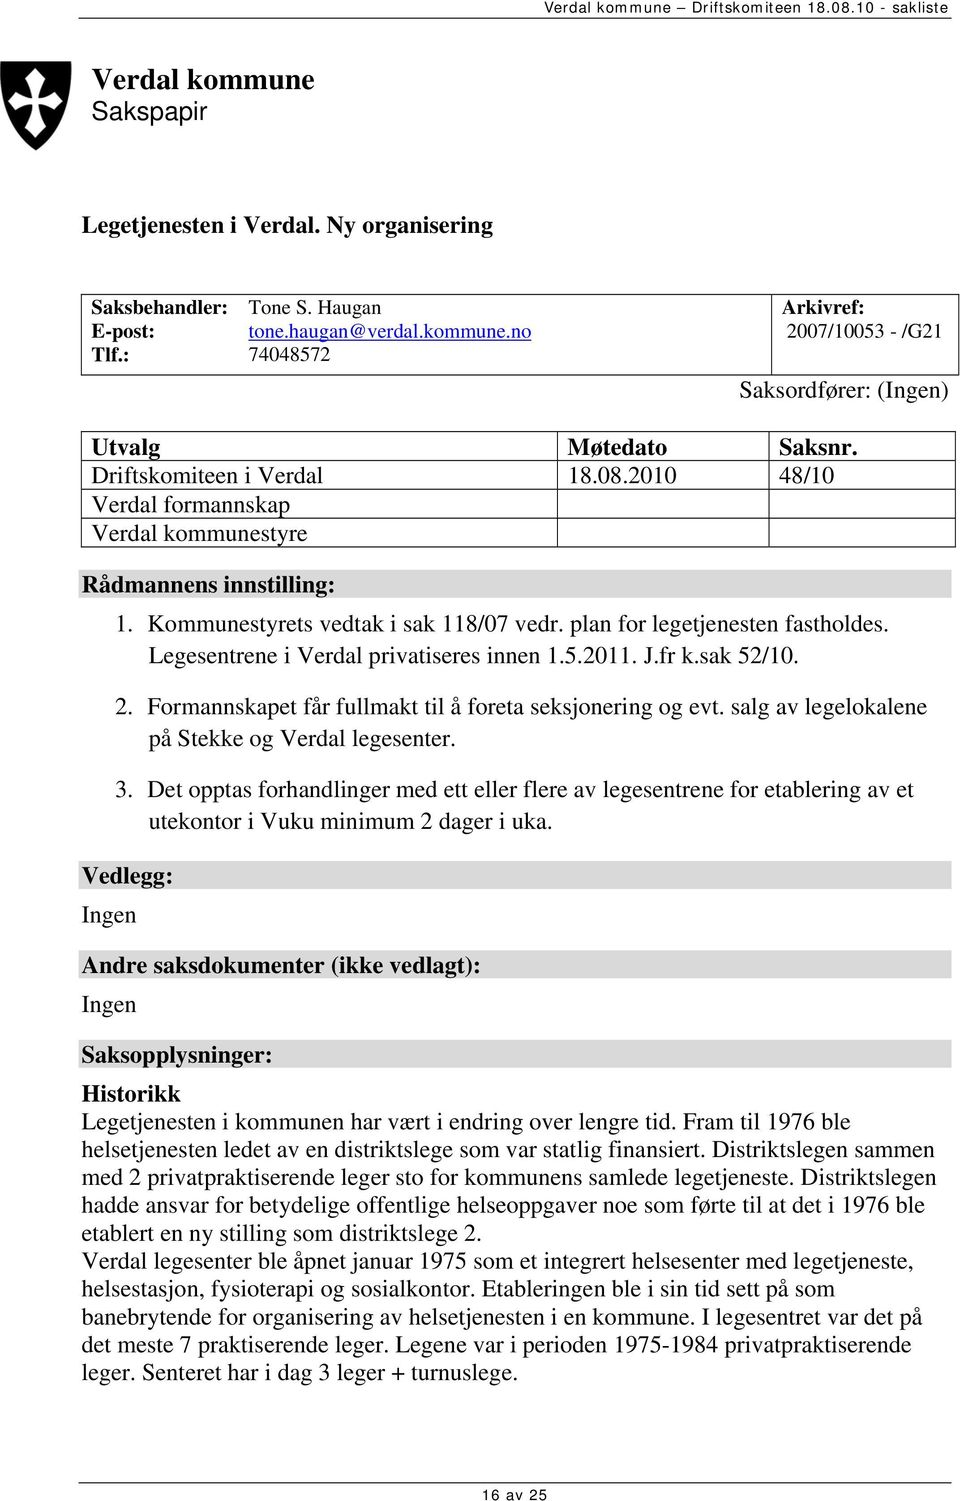 Legesentrene i Verdal privatiseres innen 1.5.2011. J.fr k.sak 52/10. 2. Formannskapet får fullmakt til å foreta seksjonering og evt. salg av legelokalene på Stekke og Verdal legesenter. 3.